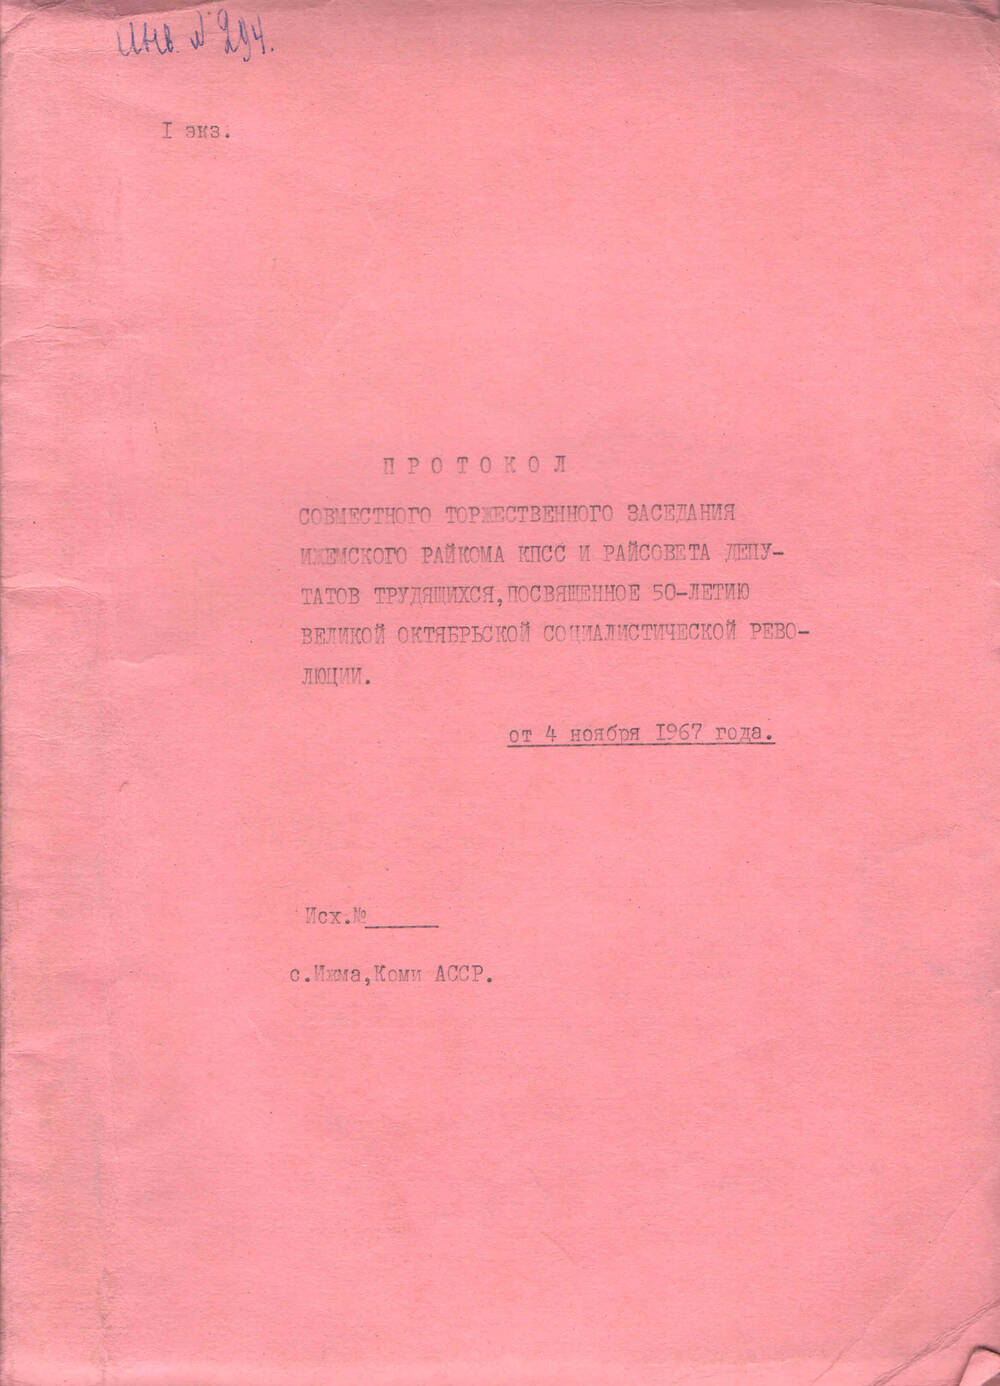 Протокол совместного торжественного заседания Ижемского райкома КПСС Райсовета депутатов, 1967 год